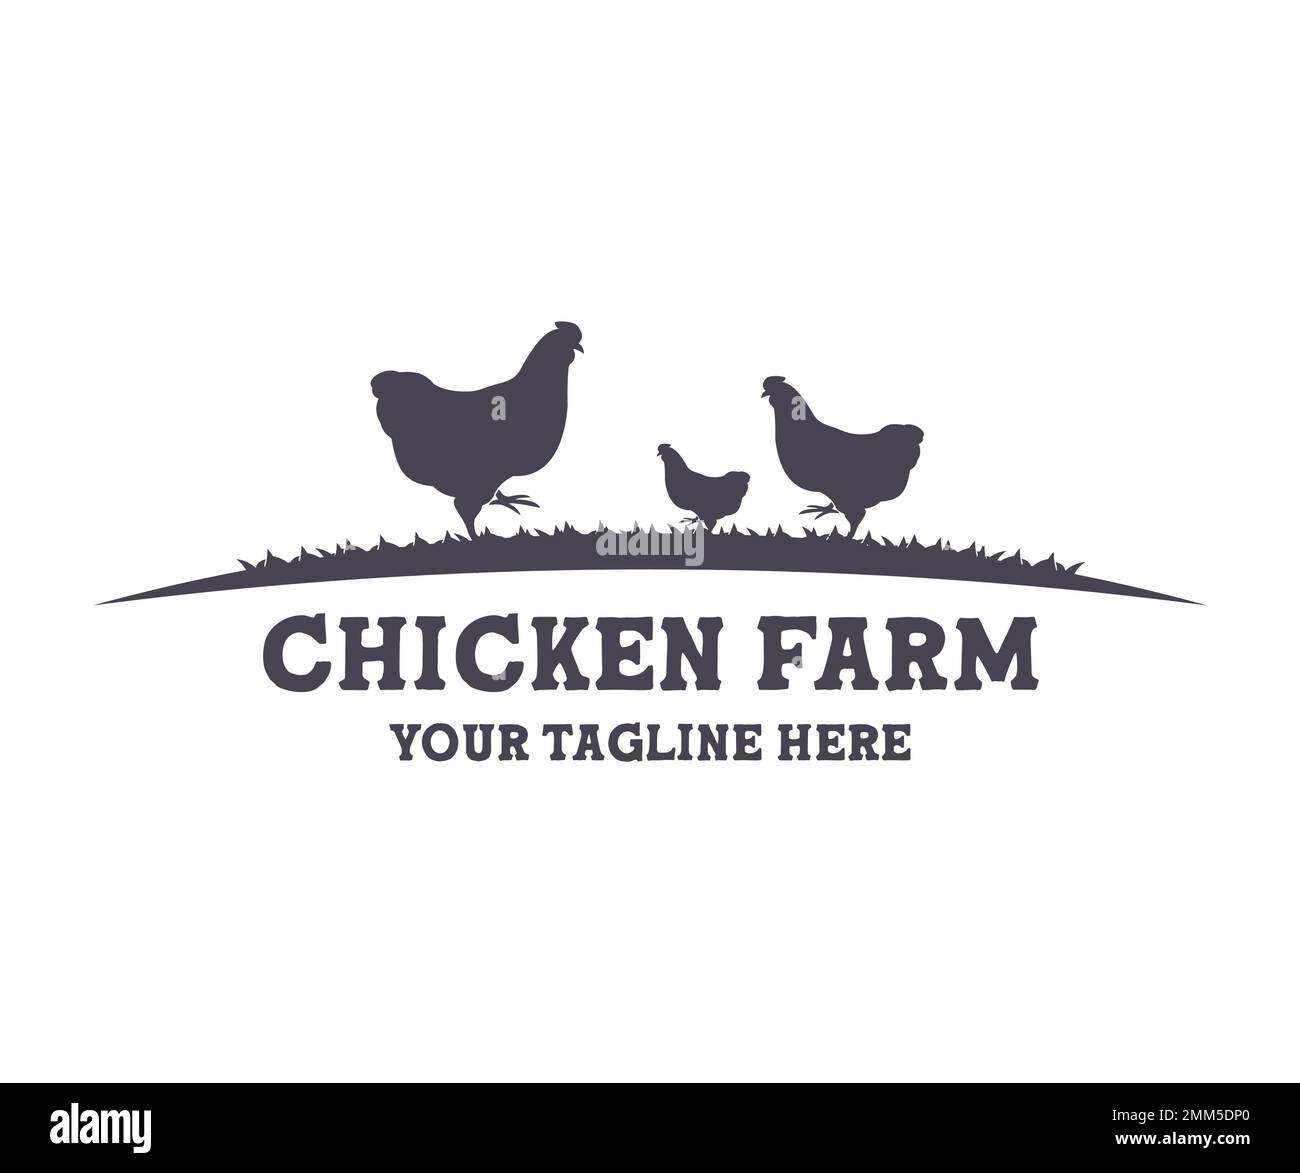 Ferme de poulet, bétail, ferme classique logo. Agriculture minimale, agriculture, élevage de poulets, alimentation de poulets. Conception de vecteur avicole. Illustration de Vecteur